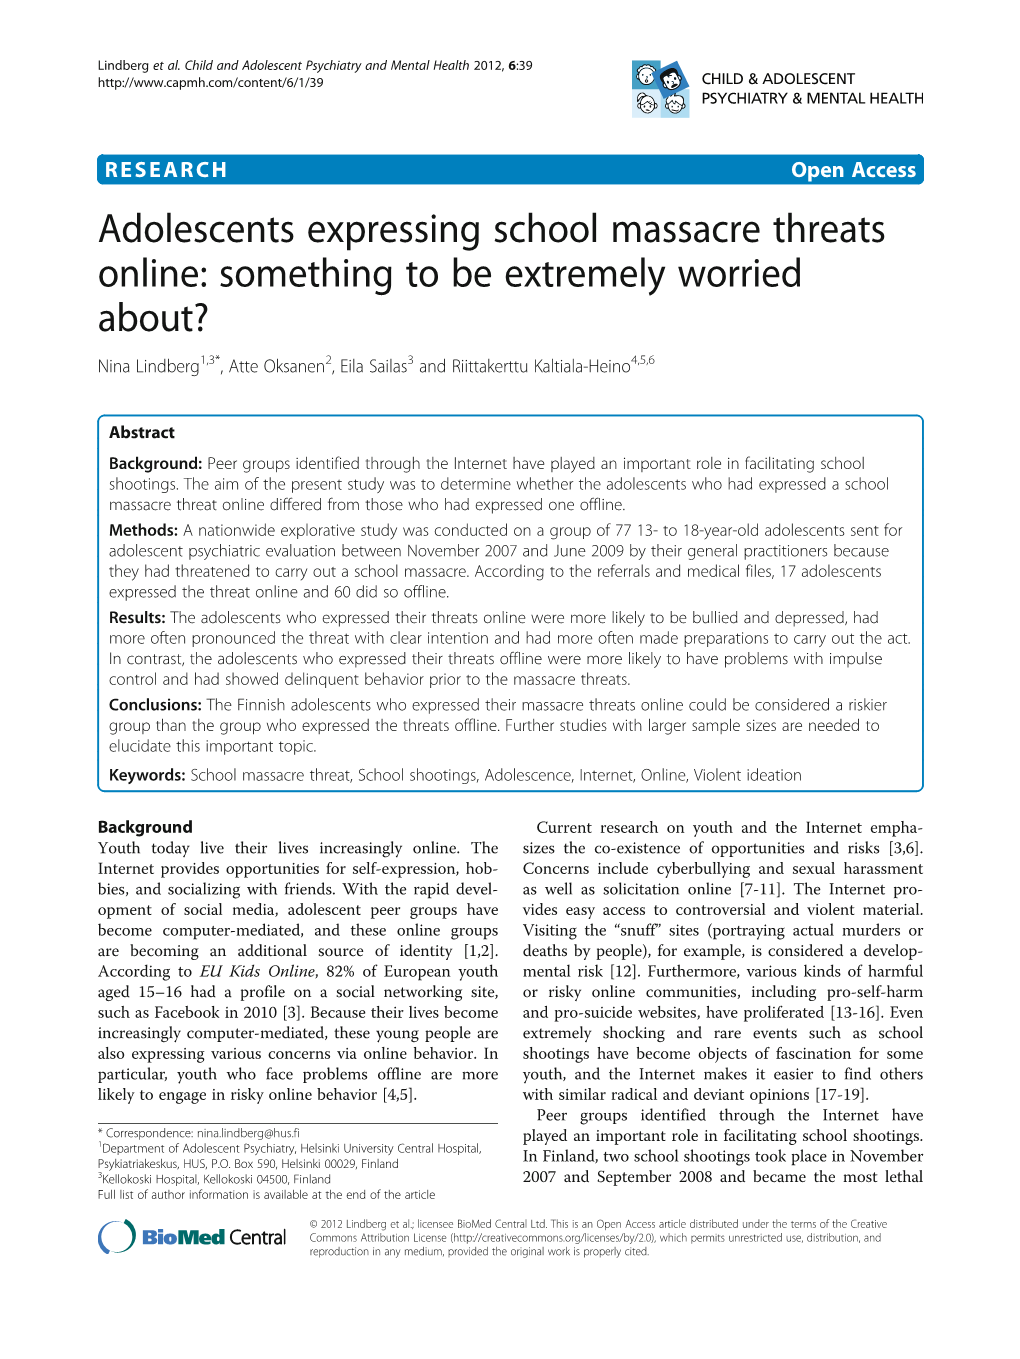 Adolescents Expressing School Massacre Threats Online